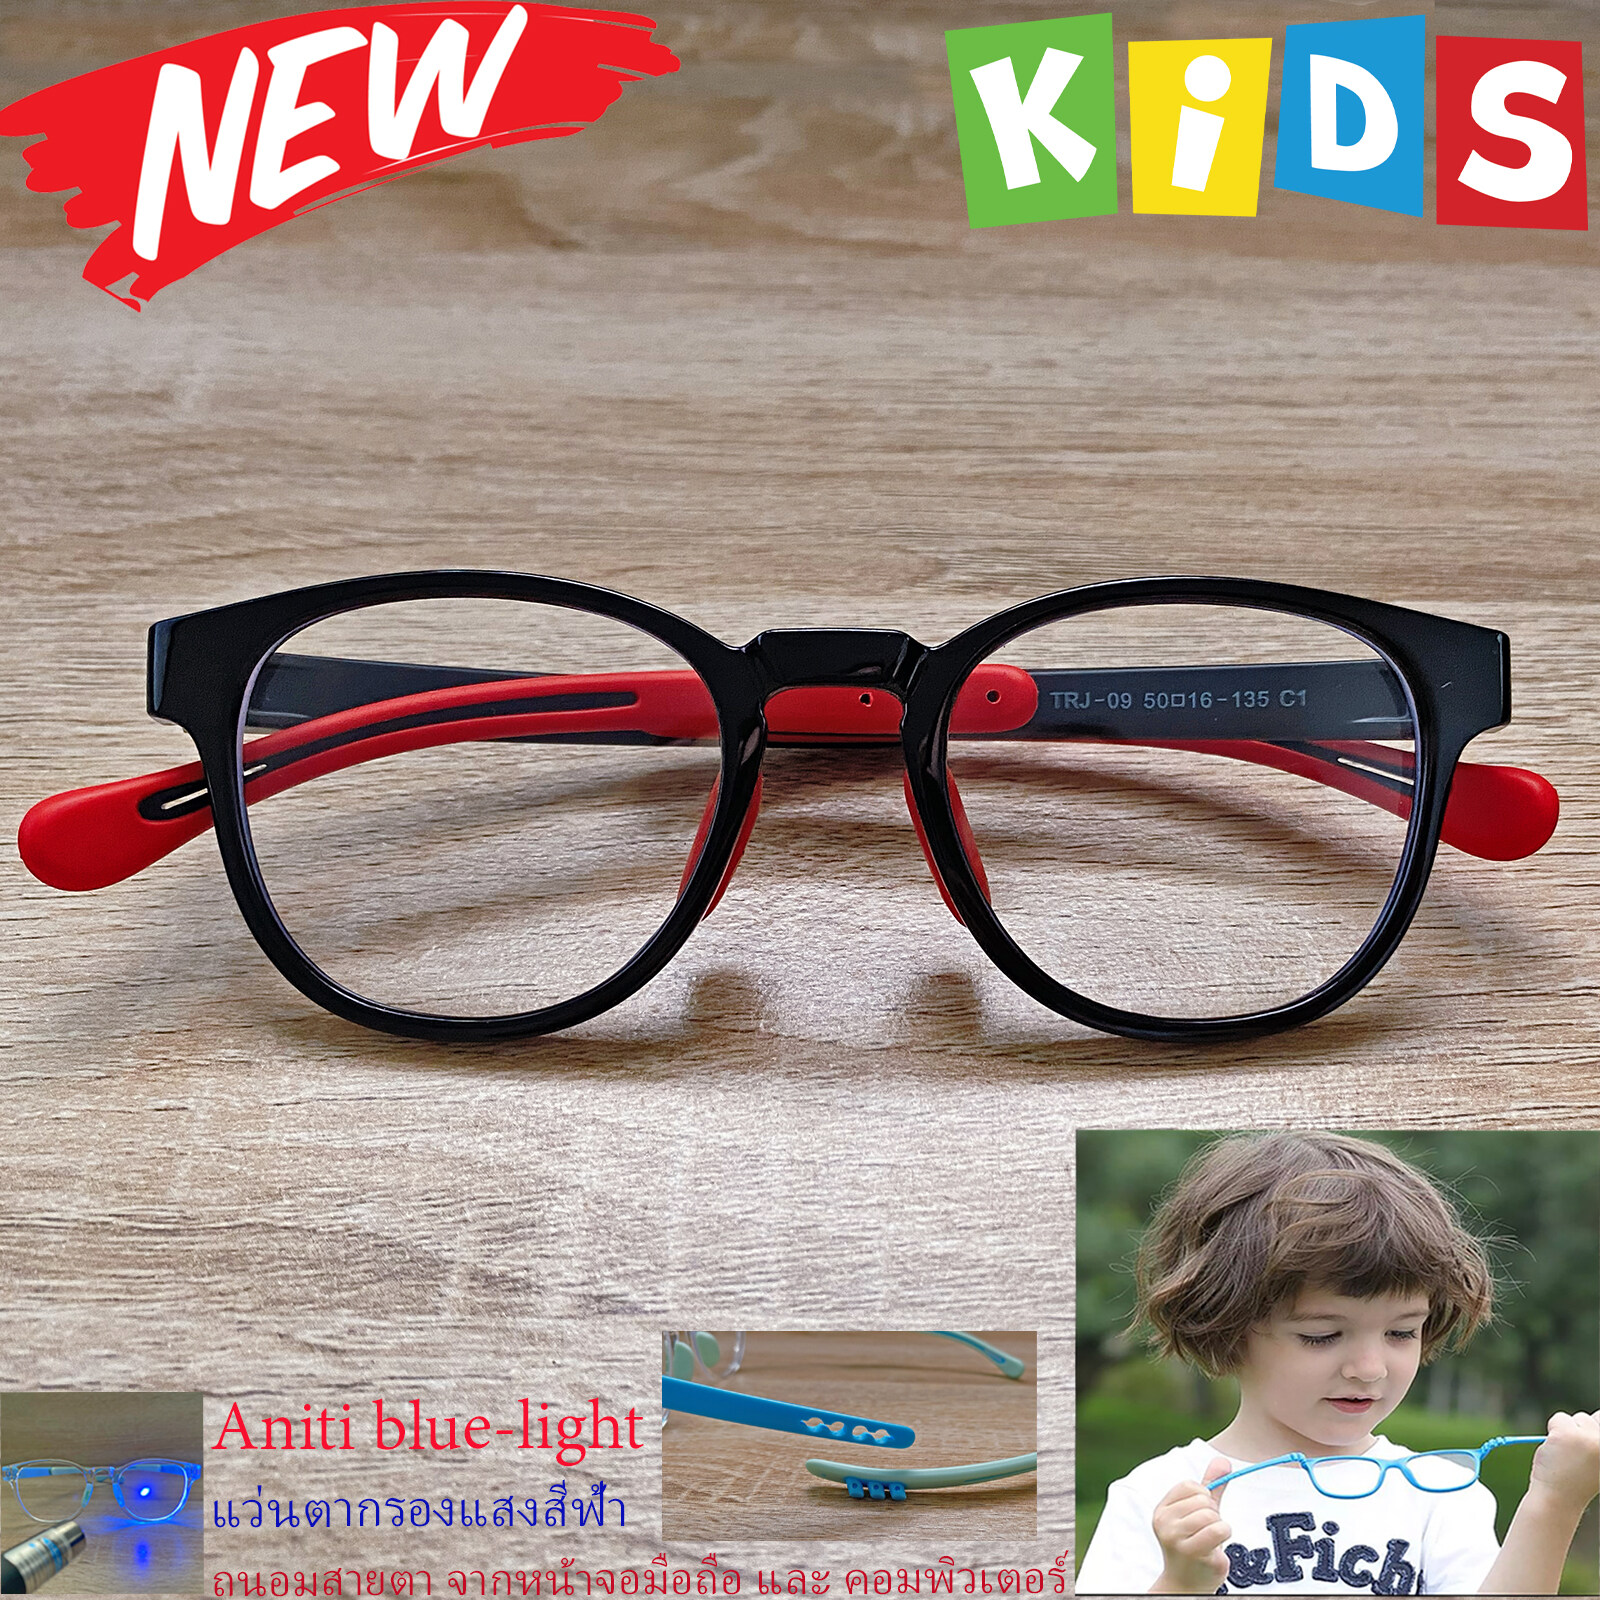 แว่นตาเด็ก กรองแสงสีฟ้า blue block แว่นเด็ก บลูบล็อค รุ่น 009 สีดำ ขาข้อต่อยืดหยุ่น ขาปรับระดับได้ วัสดุTR90 เหมาะสำหรับเลนส์สายตา